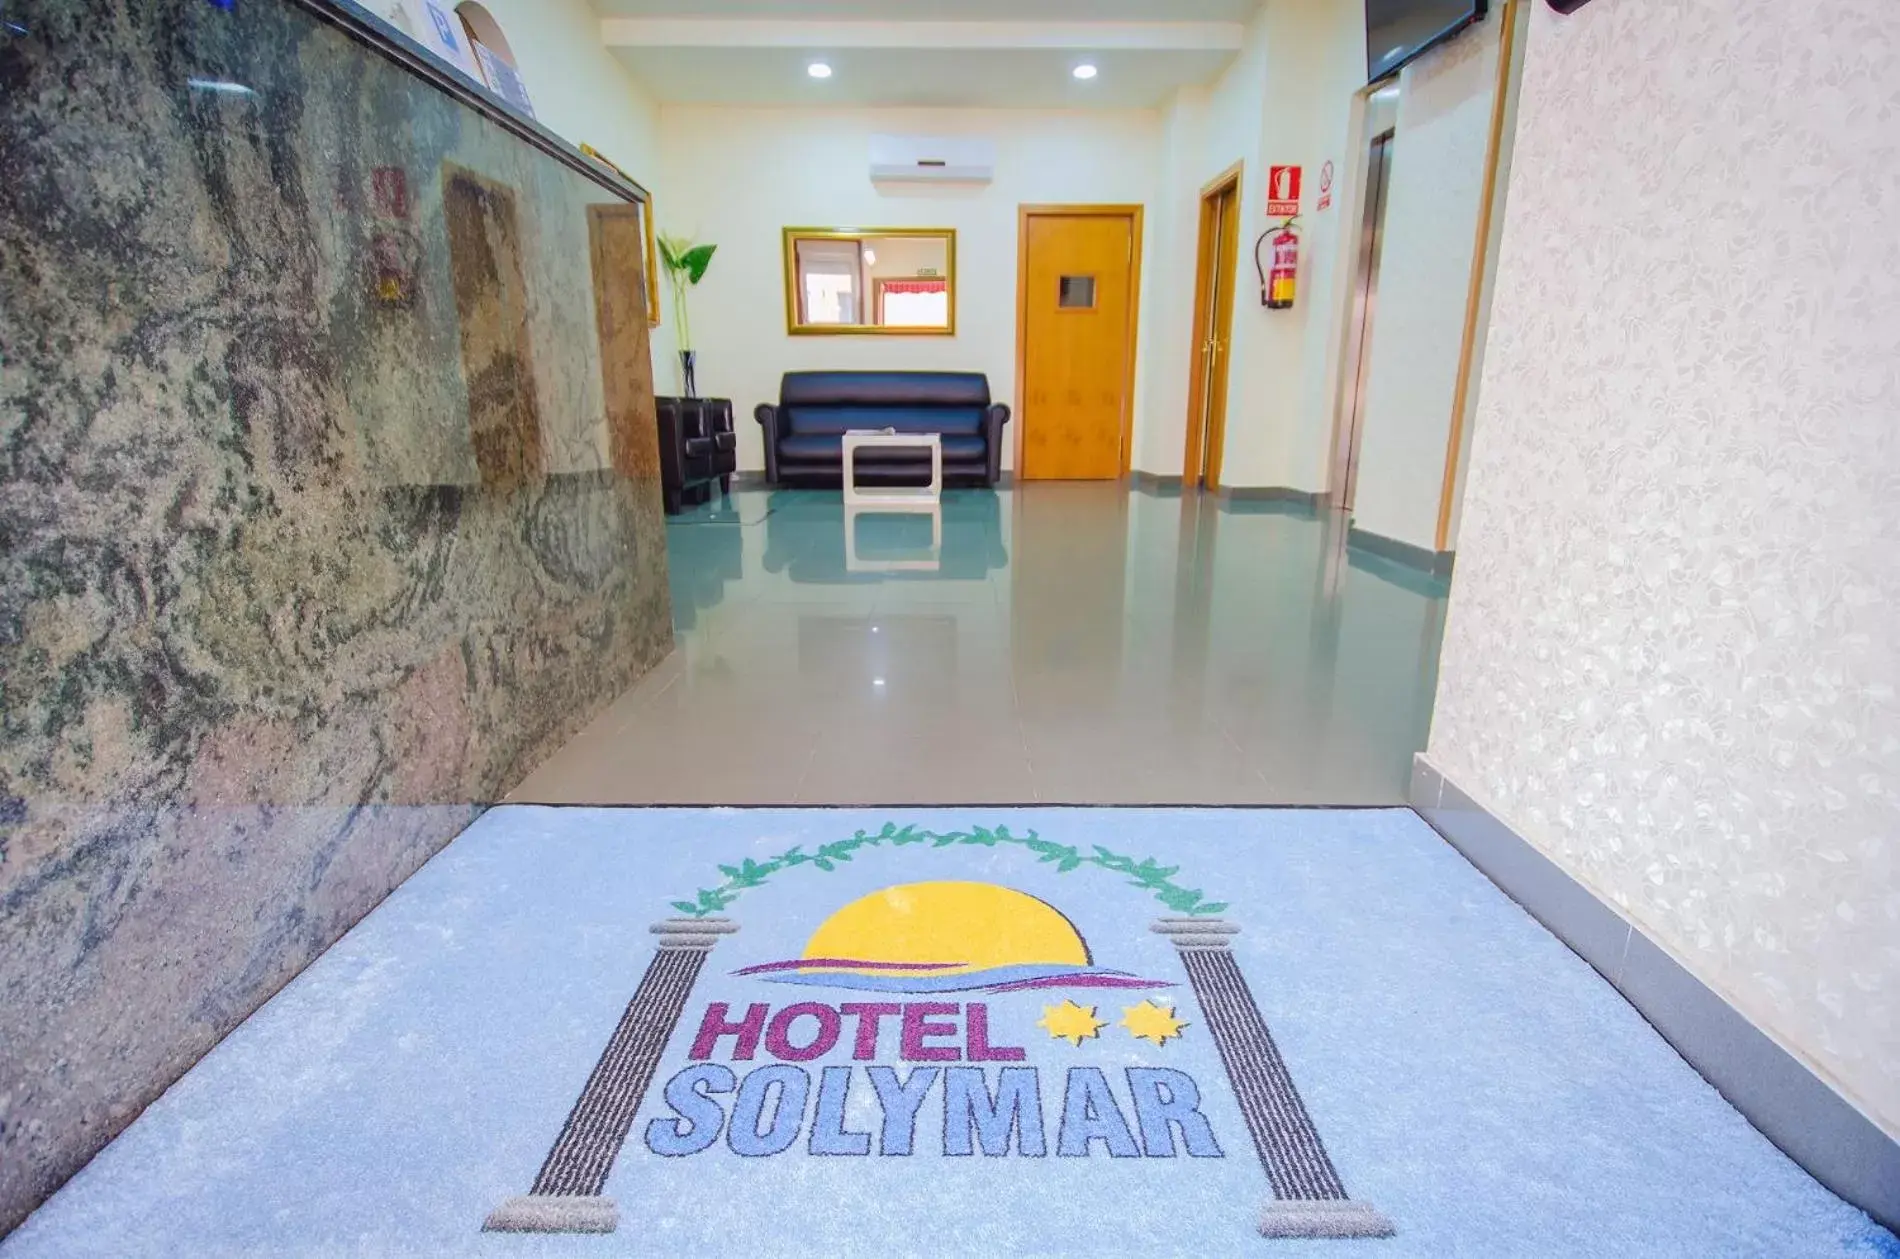 Lobby or reception in Hotel Solymar